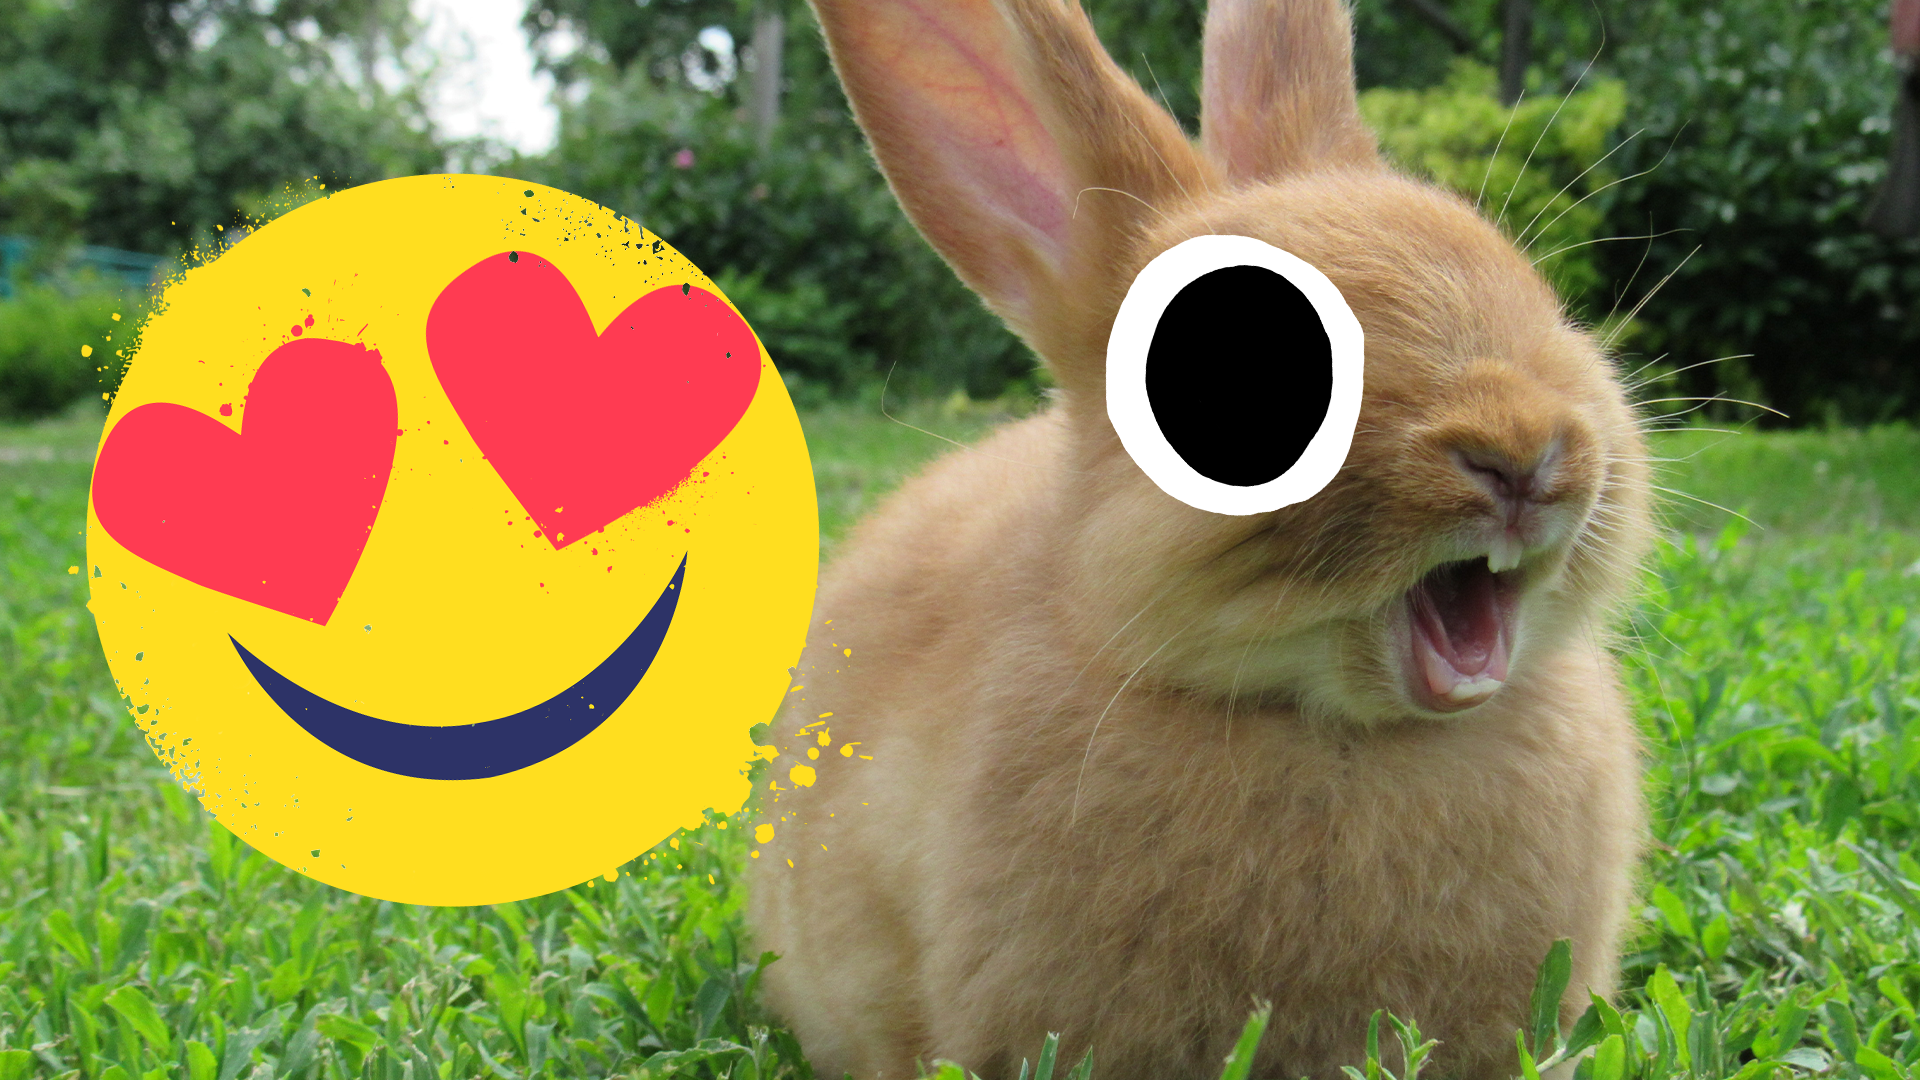 Cute lil bunny and heart eyes emoji